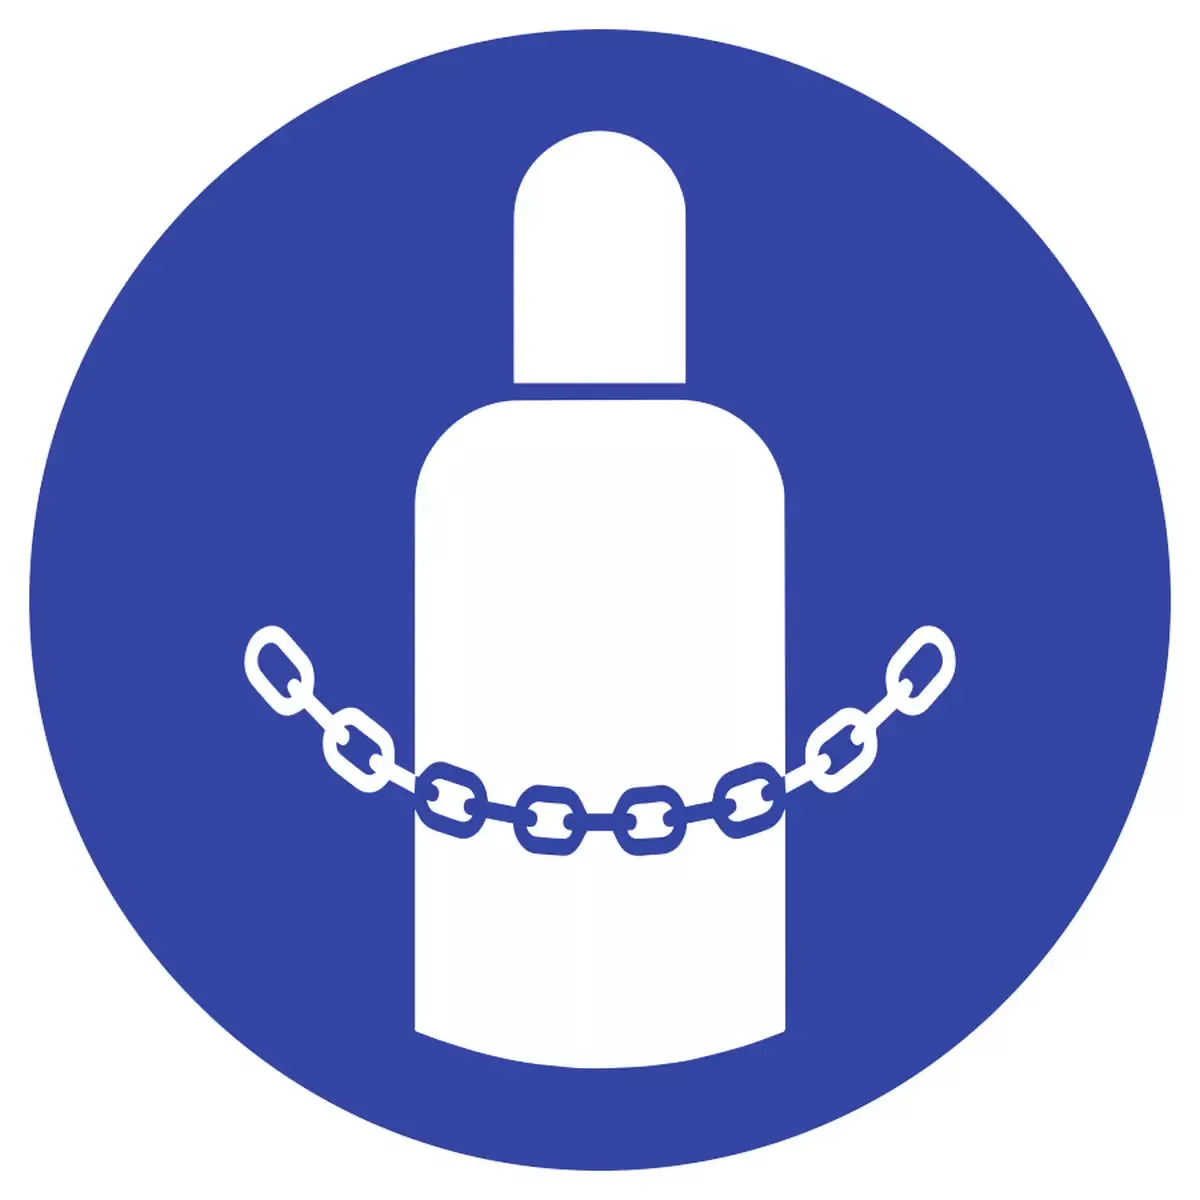 Gebotszeichen Gasflaschen sichern ISO 7010, Folie, Ø 100 mm für Warnen und hinweisen